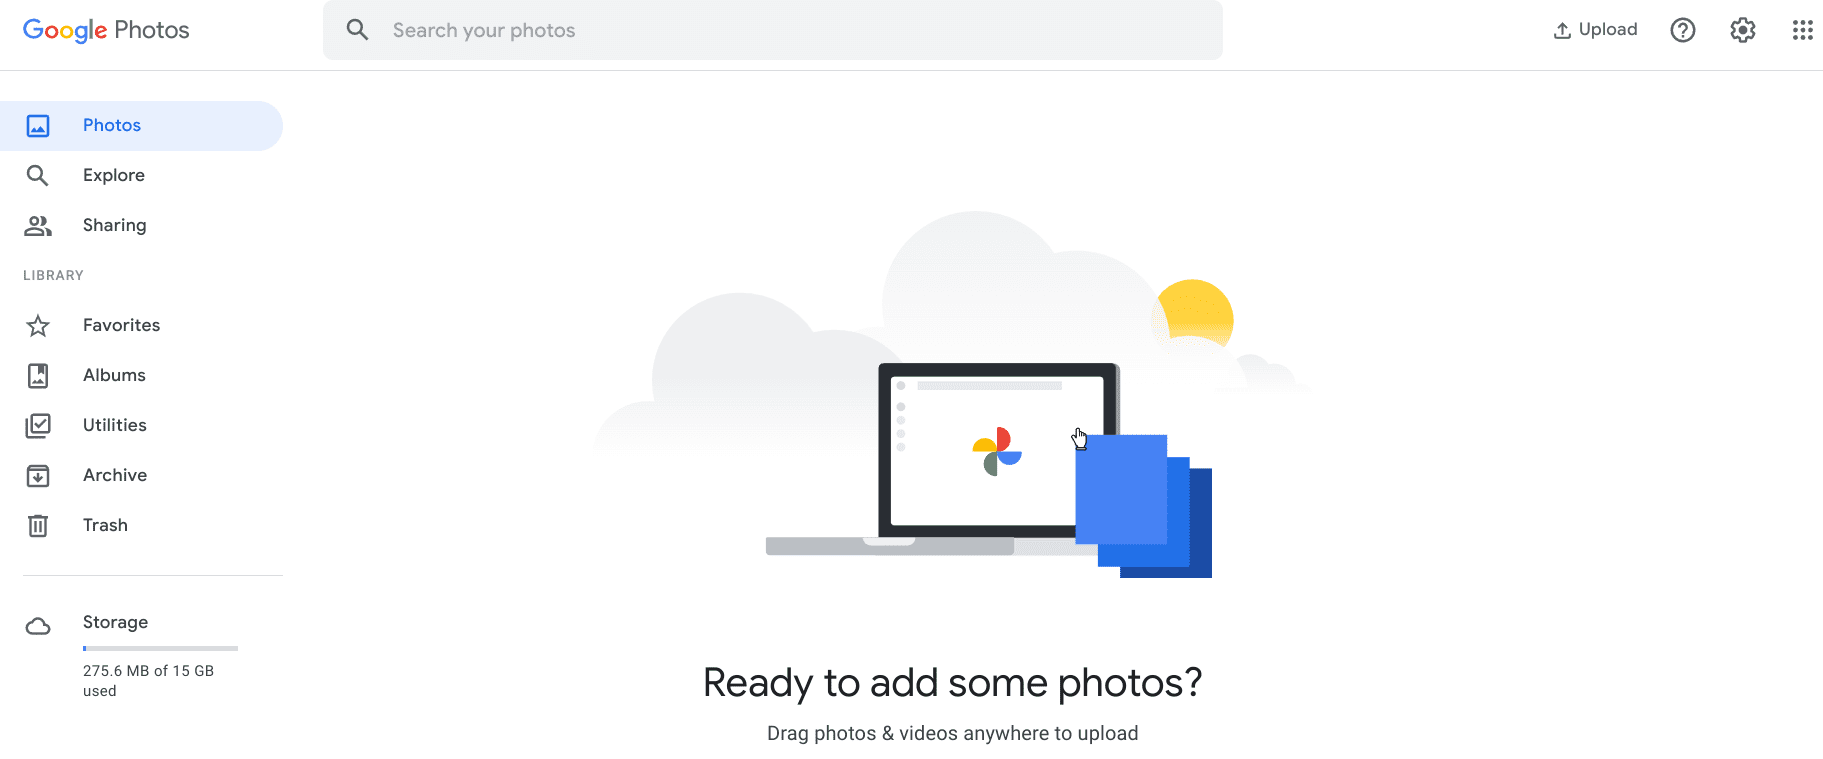 Google Photos user interface